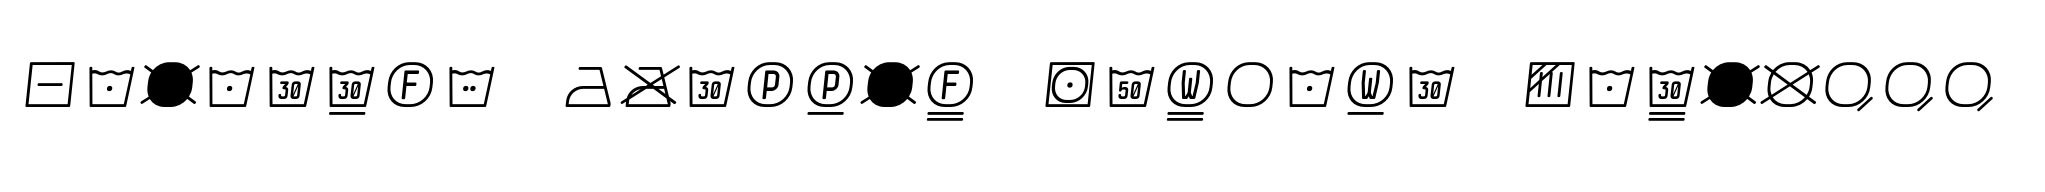 Monostep Washing Symbols Rounded Thin Italic image